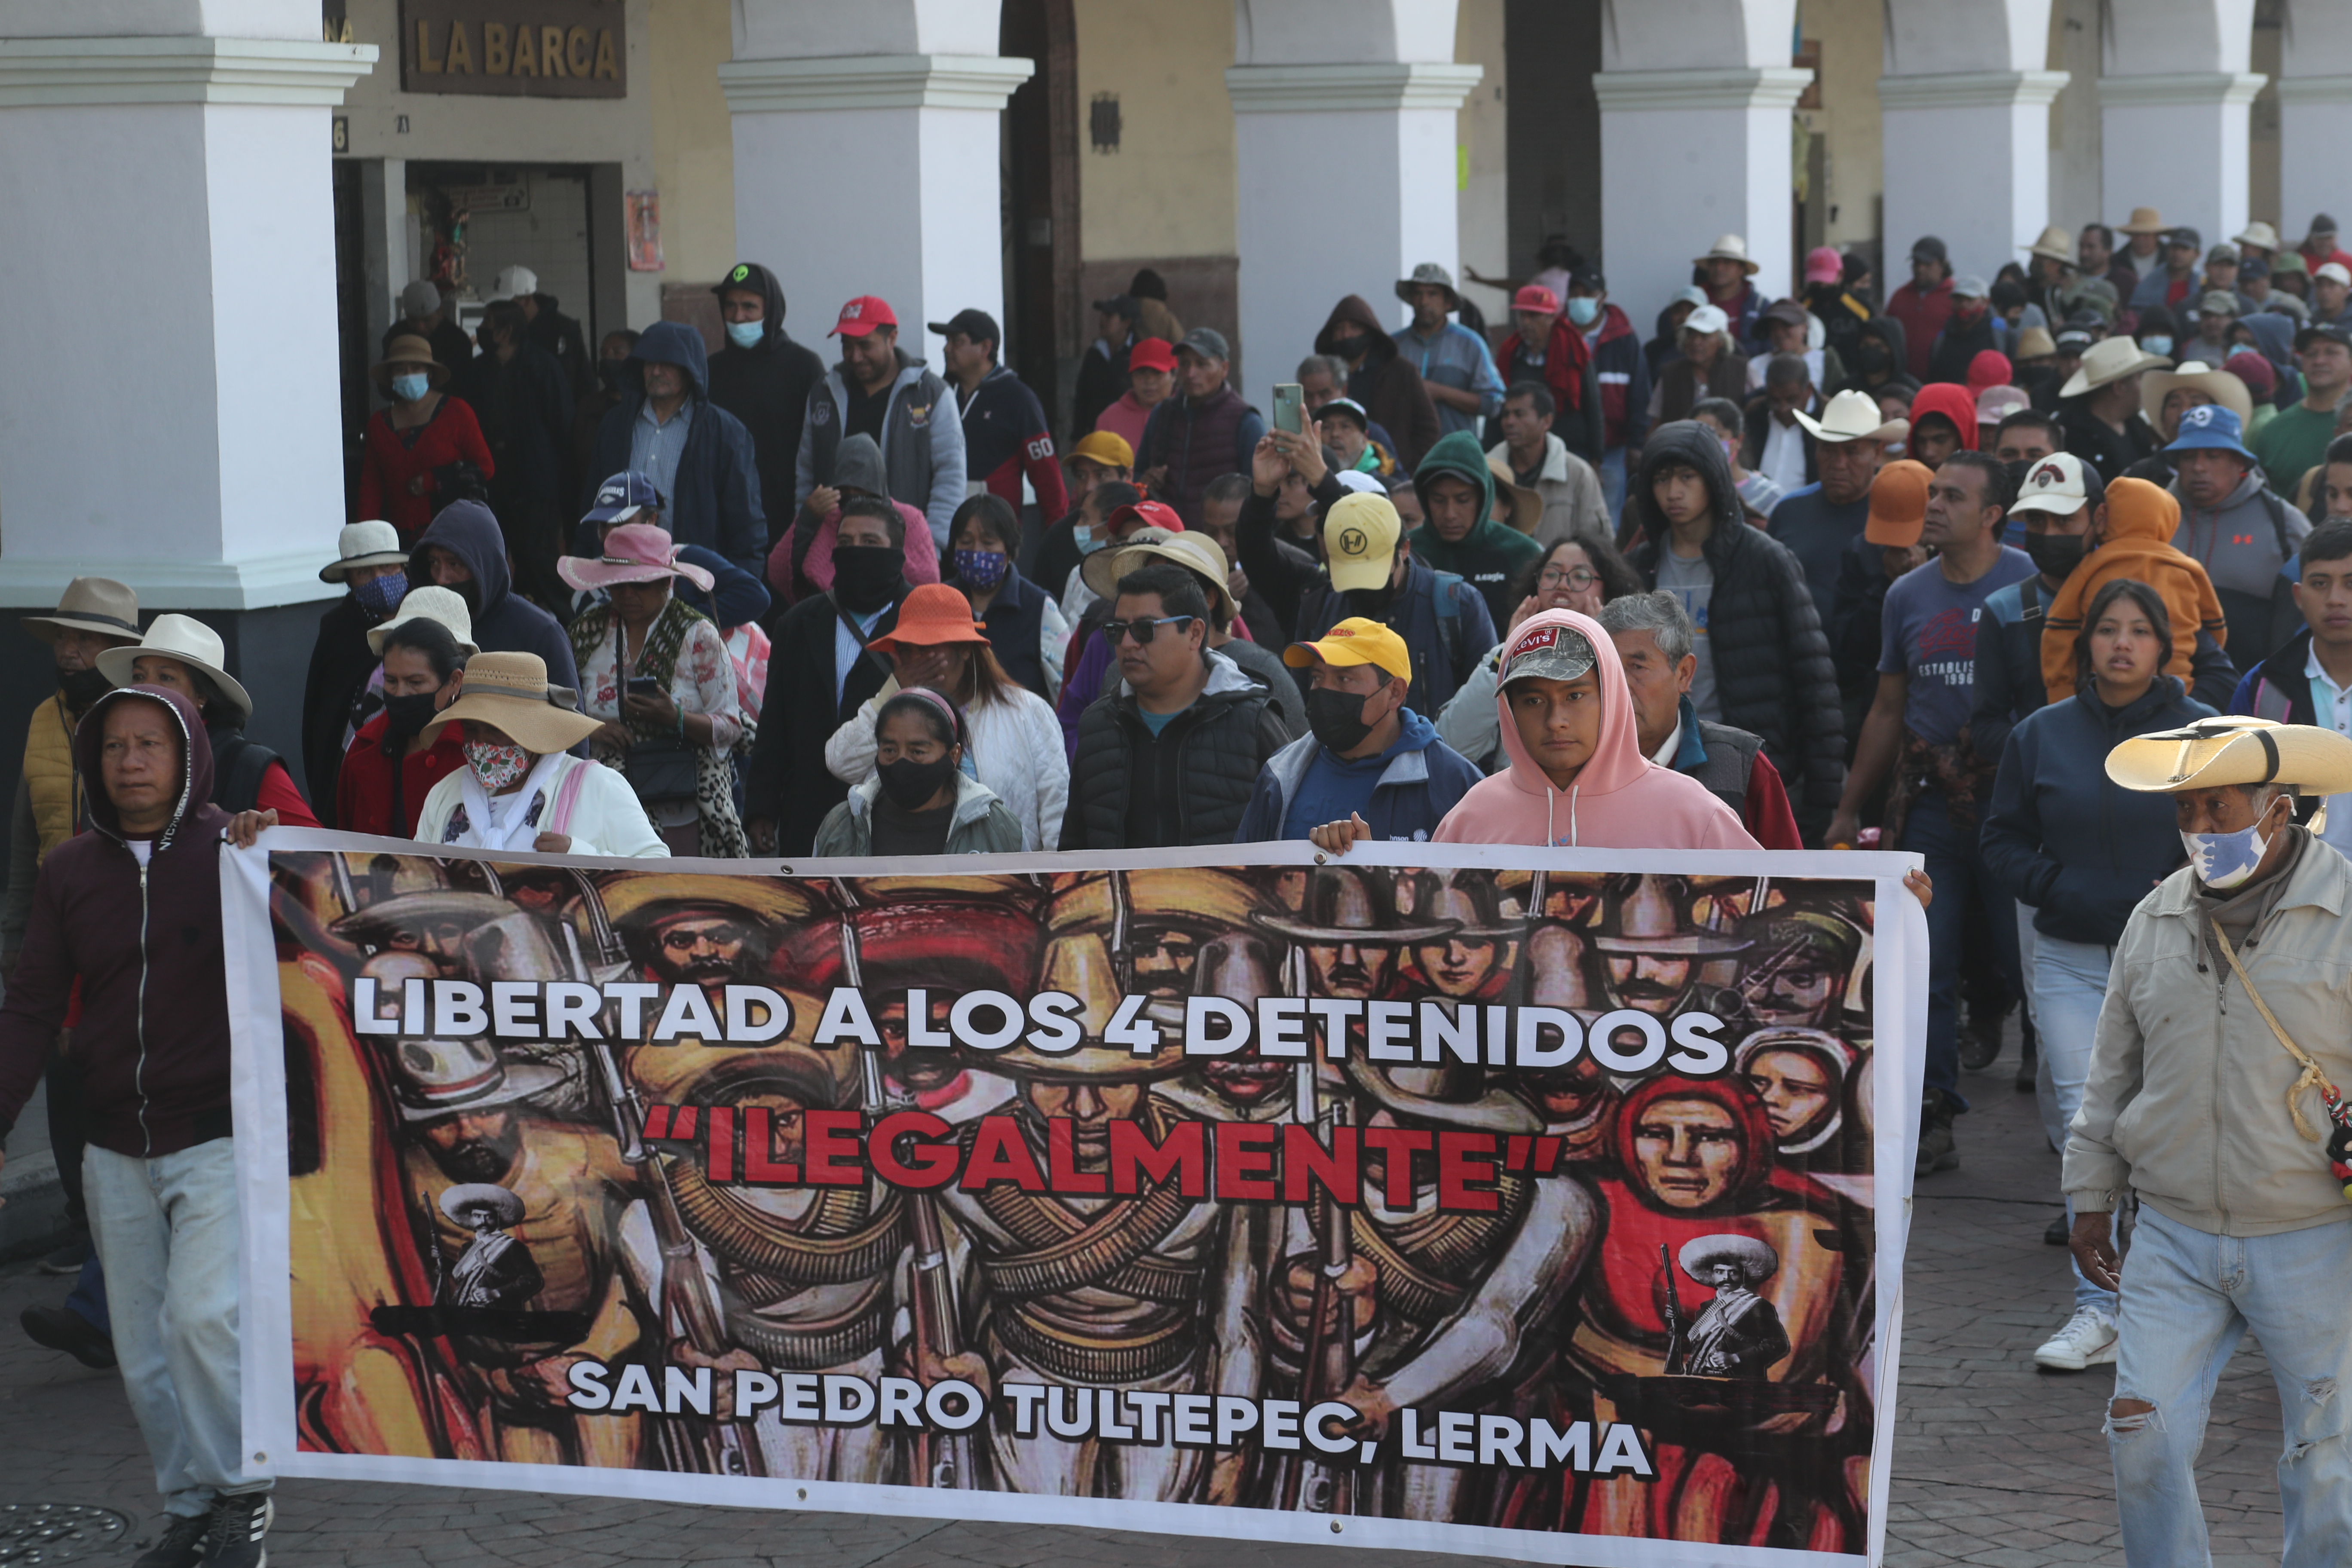 Ejidatarios cansados de abusos exigen la liberación de 4 personas, denuncian acoso desde la gobernatura de Arturo Montiel